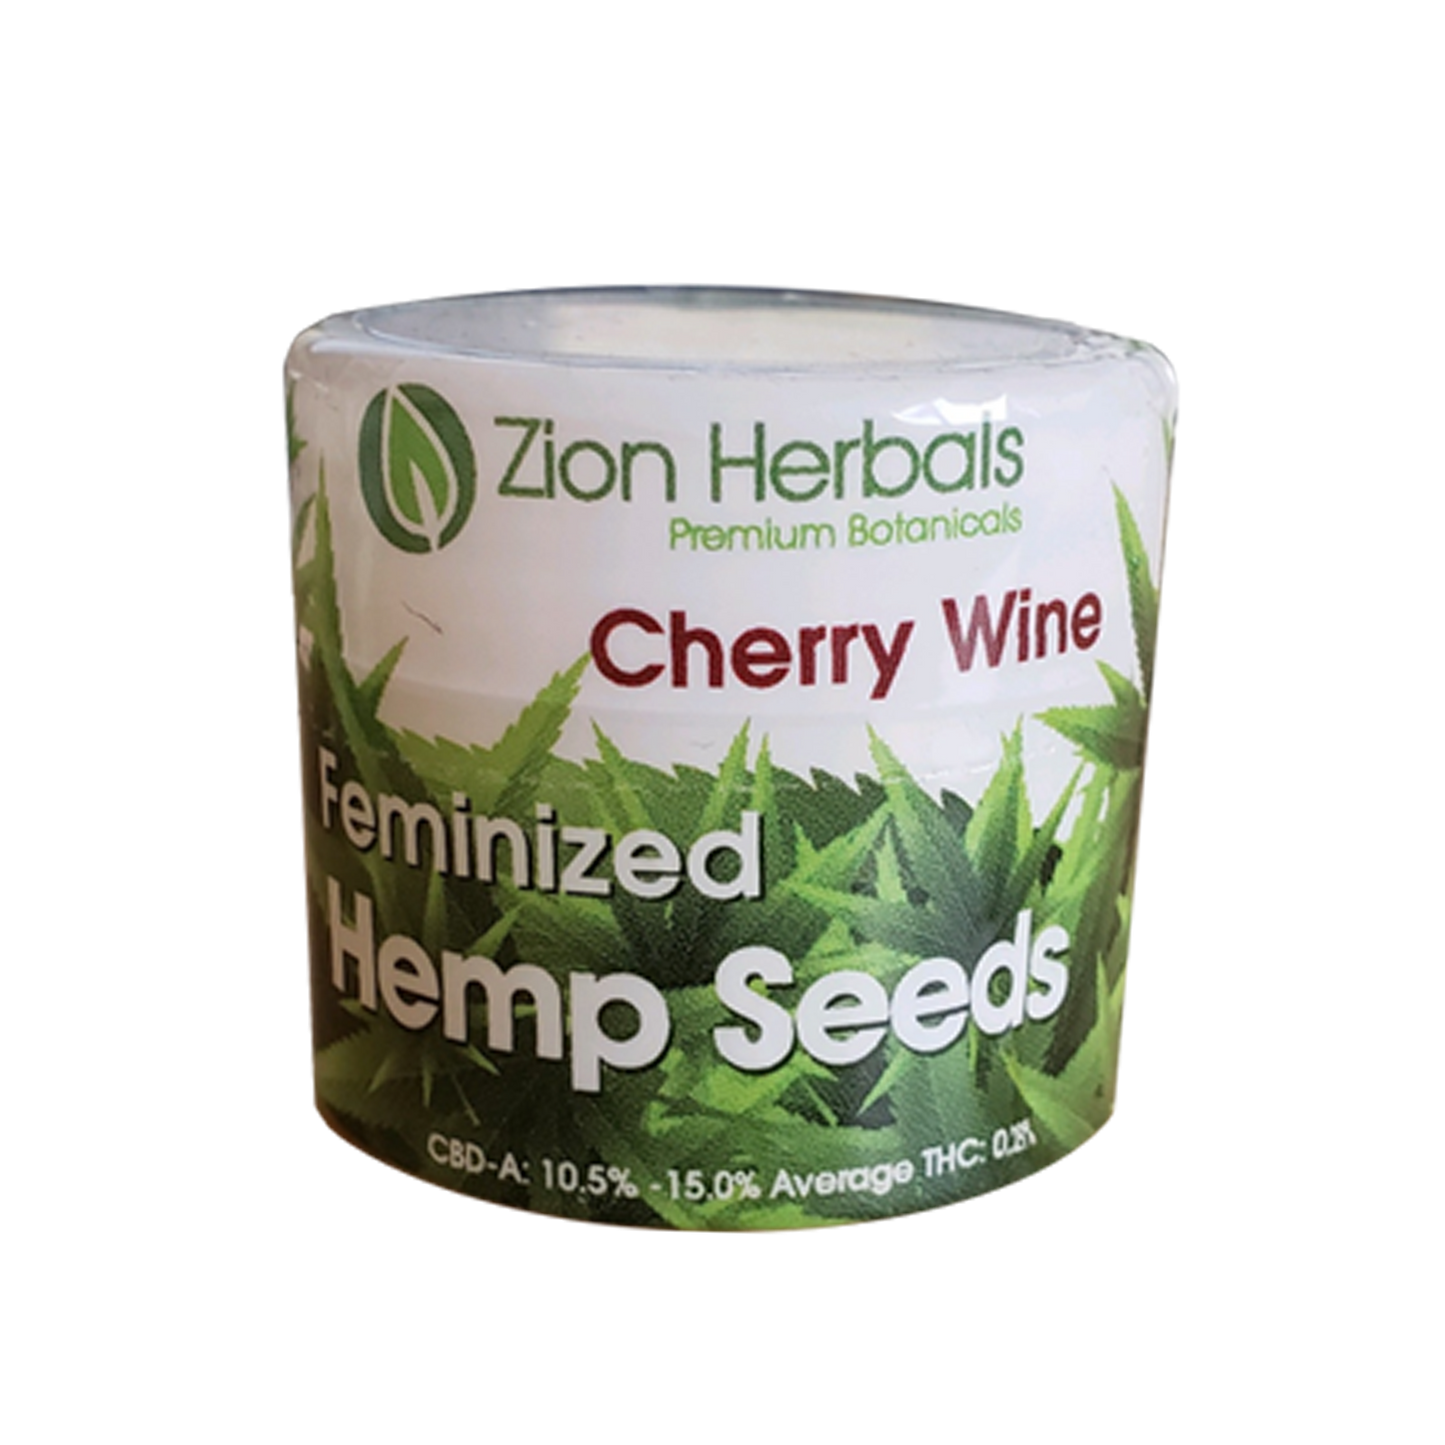 Zion Herbals Cherry Wine Hemp Seed Jar